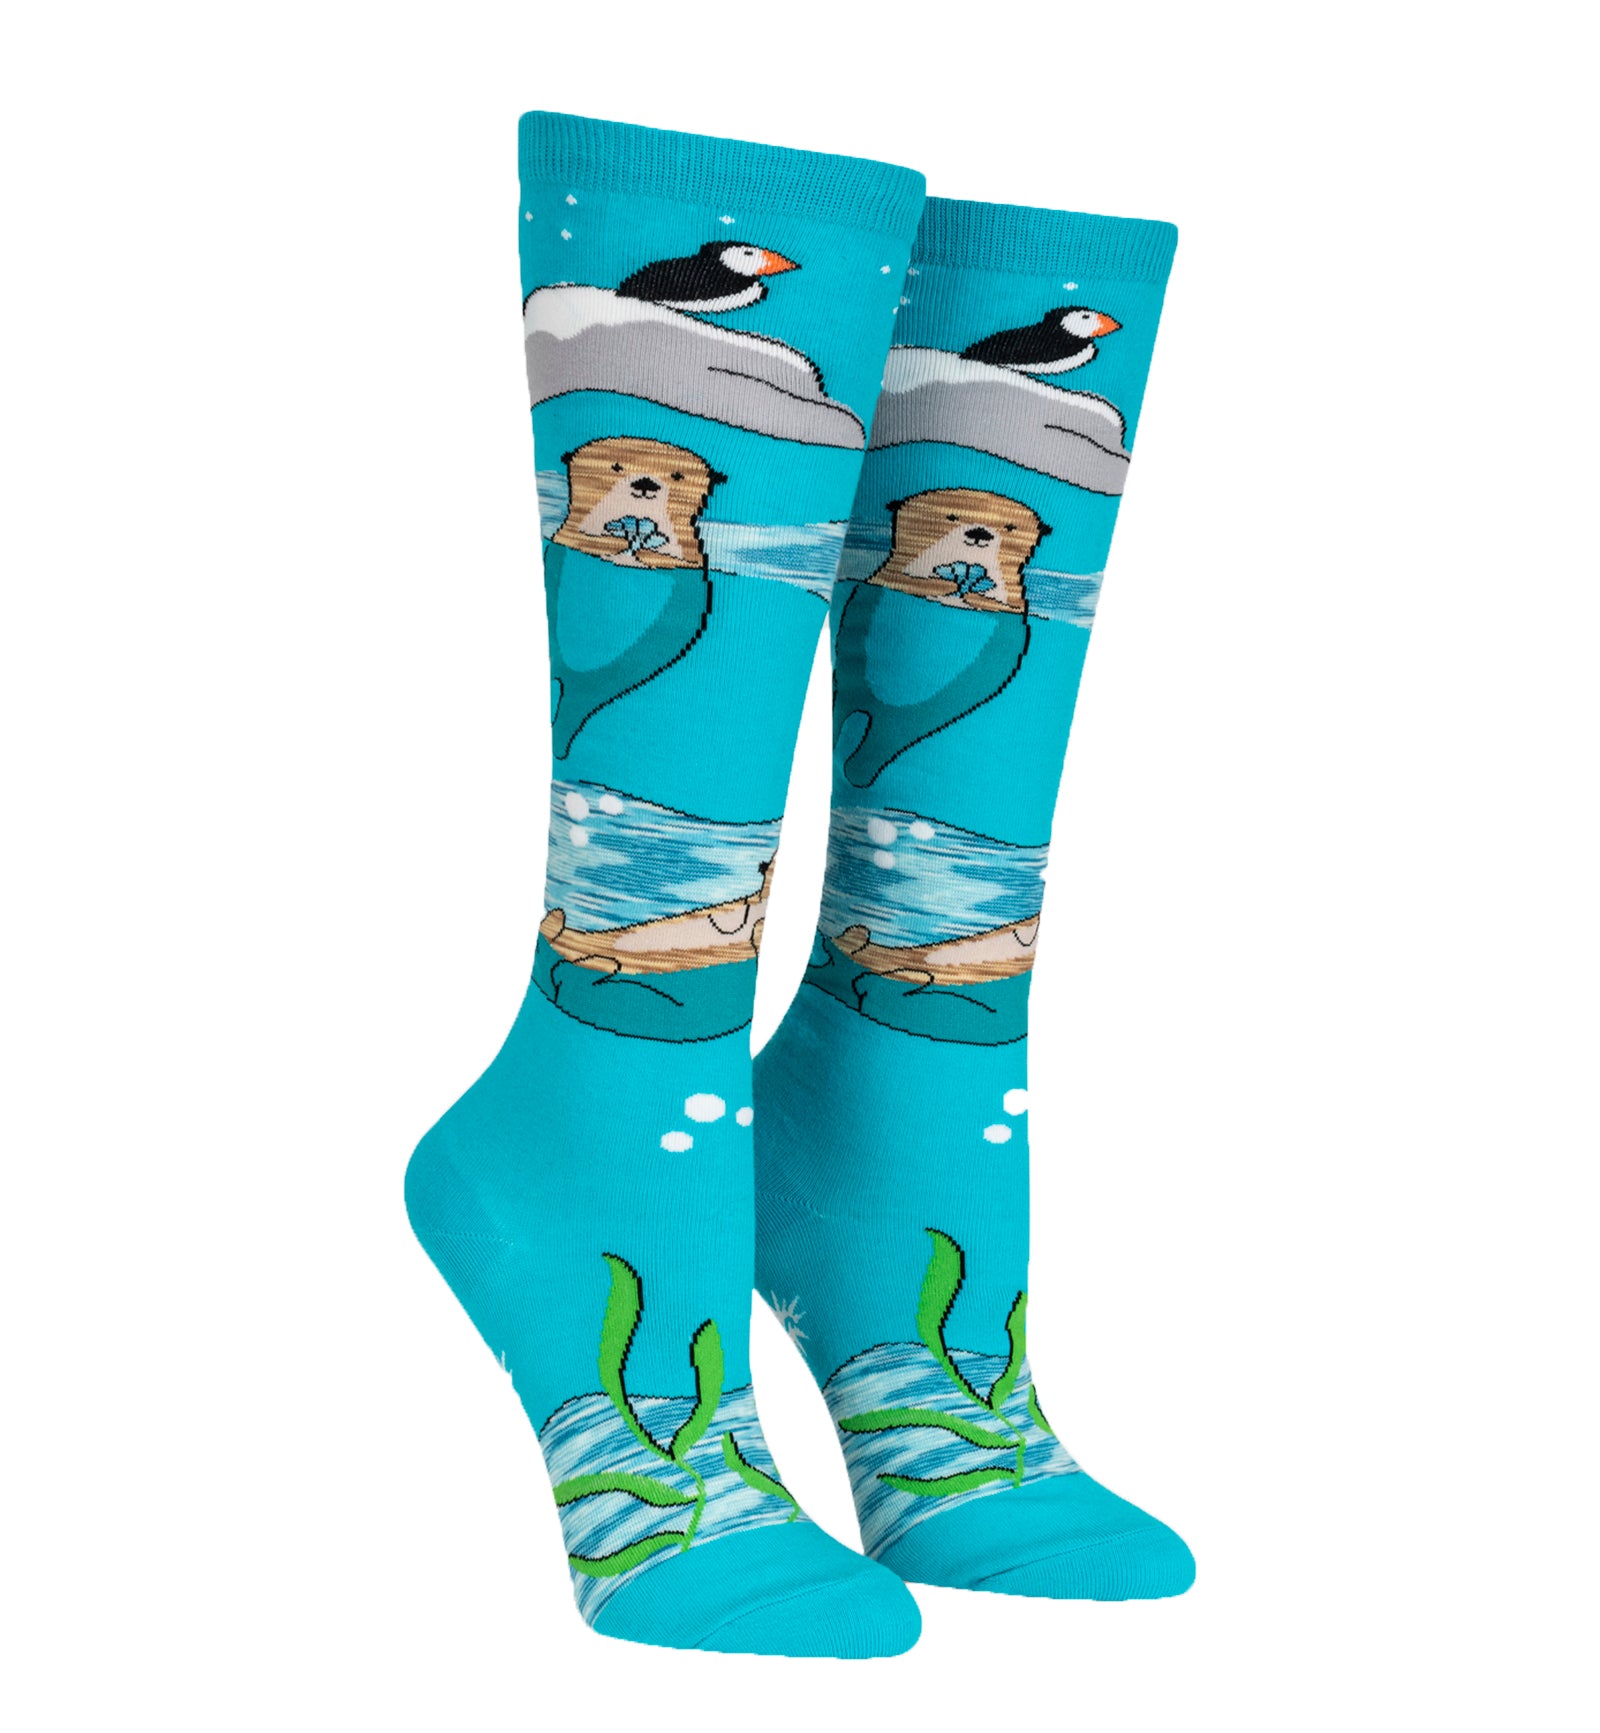 SOCK it to me Unisex Knee High Socks (F0627),Plays Well With Otters - Plays Well With Otters,One Size